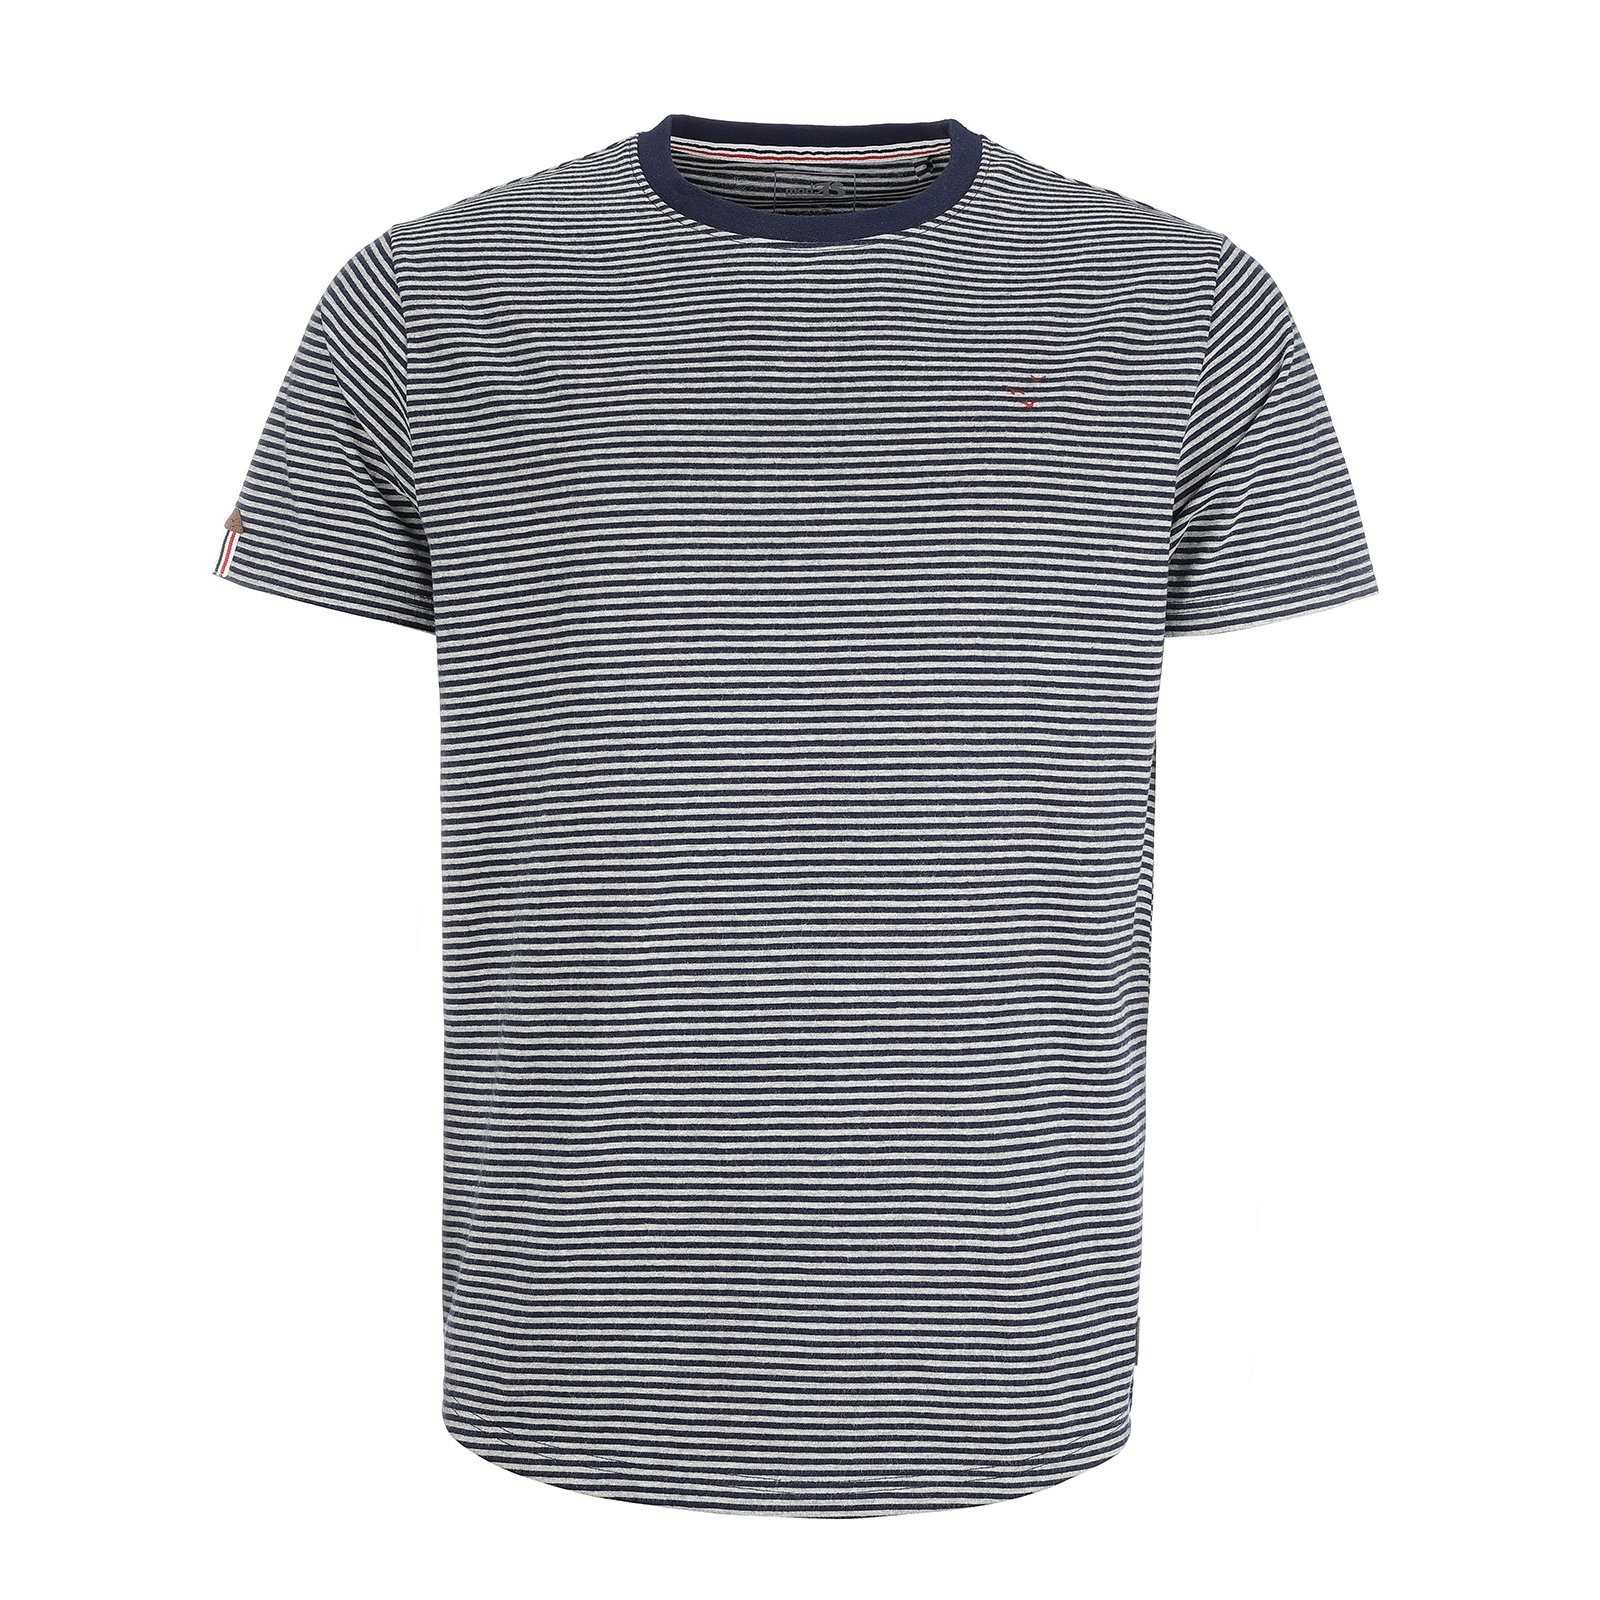 modAS T-Shirt Herren Shirt gestreift - Kurzarm-Shirt mit Streifen aus Baumwolle